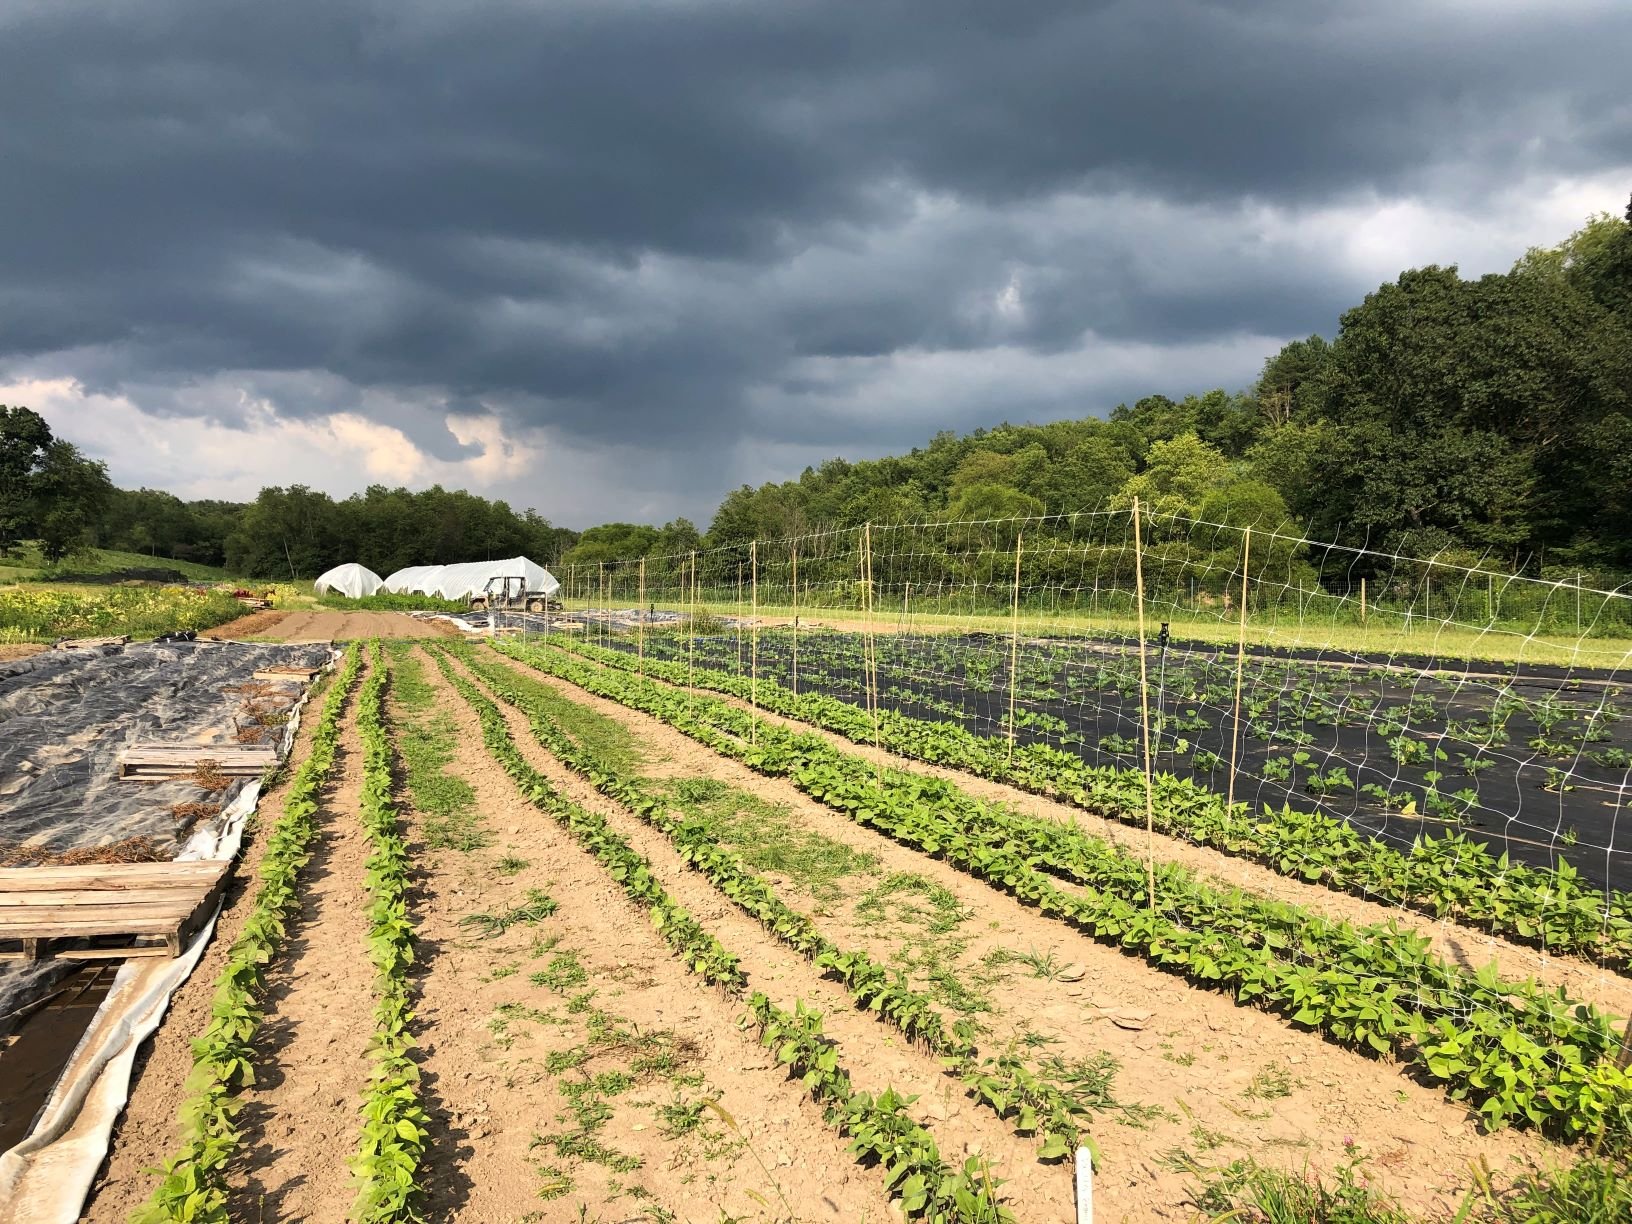 Previous Happening: Farm Happenings for August 27, 2019 (week 12)